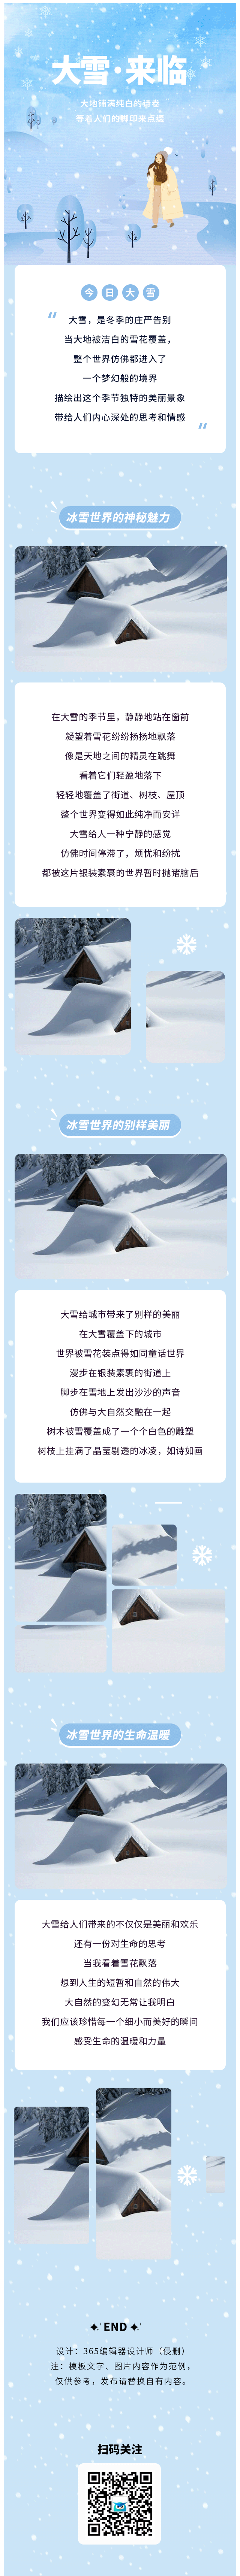 大雪节气小雪节气二十四节气节气习俗冬季冬天